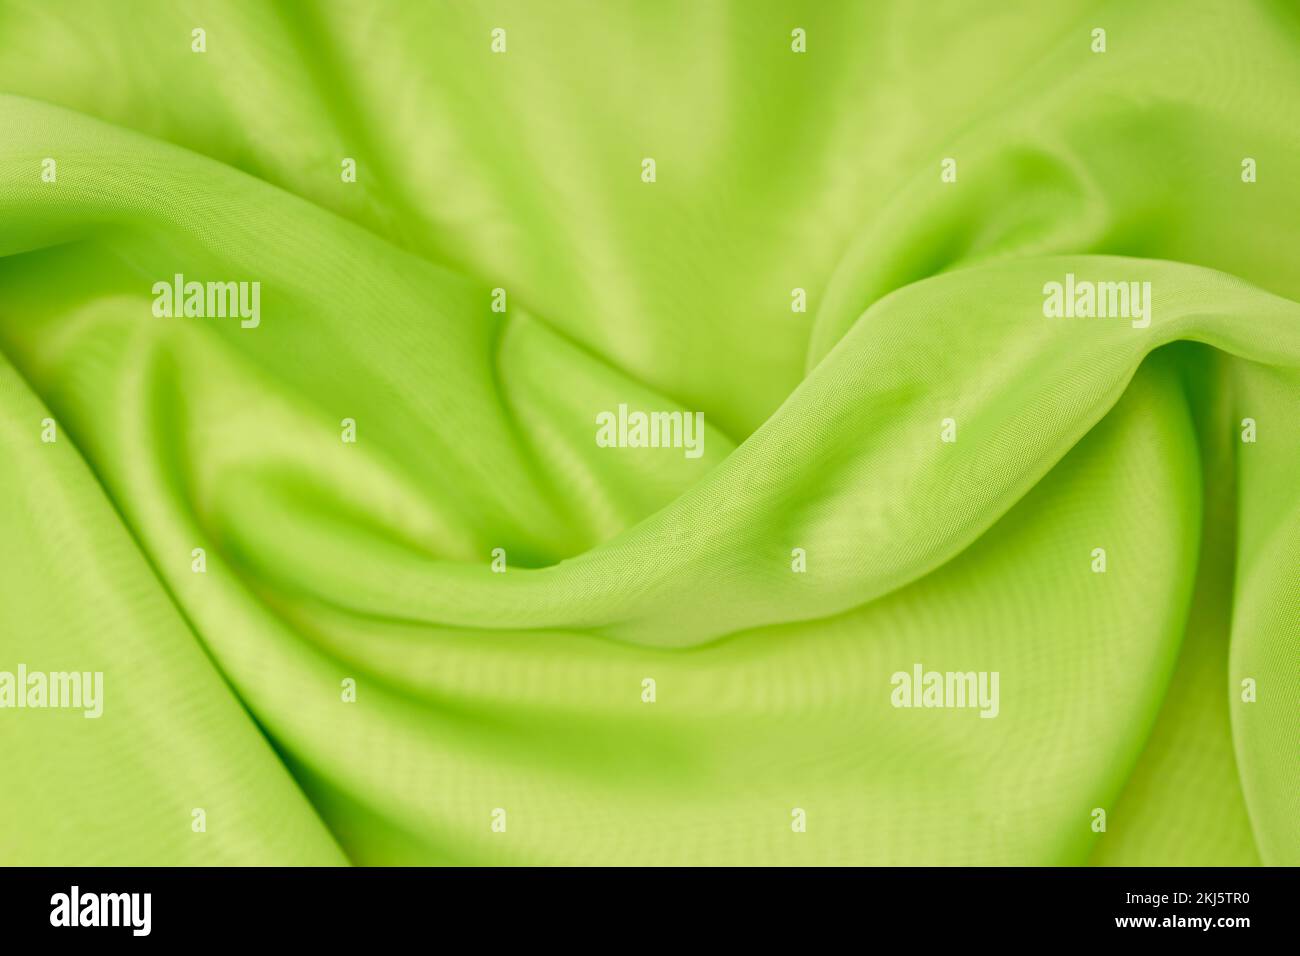 magnifique soie verte. toile de fond ondulée. Photo de haute qualité Banque D'Images